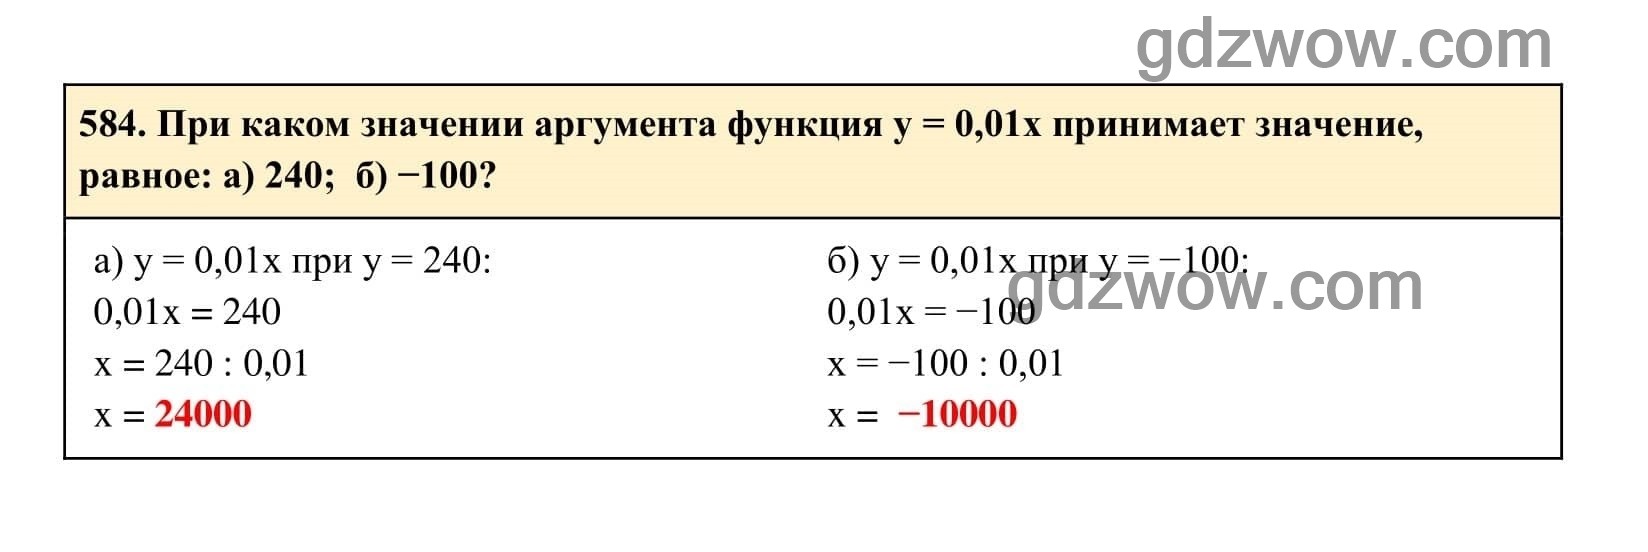 Упражнение 584 - ГДЗ по Алгебре 7 класс Учебник Макарычев (решебник) - GDZwow